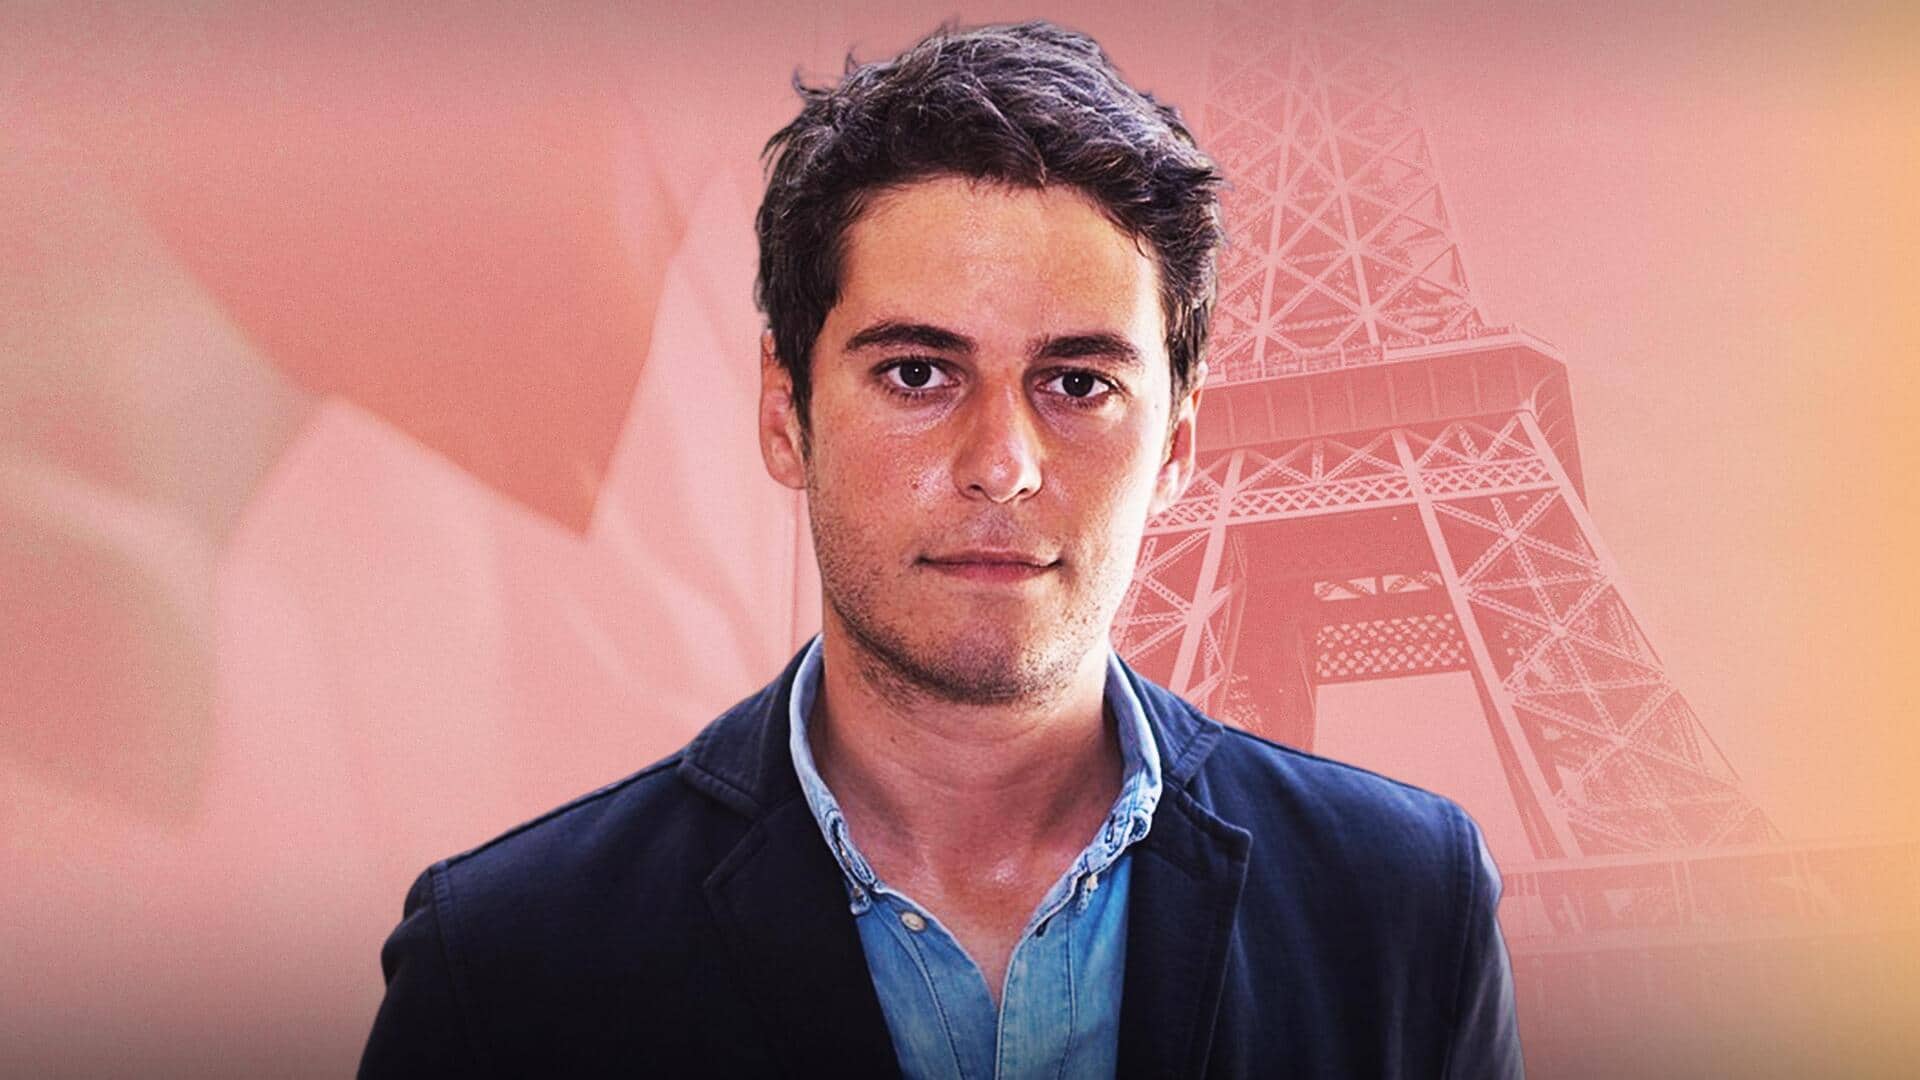 गेब्रियल अटाल बने फ्रांस के सबसे युवा और पहले समलैंगिक प्रधानमंत्री, जानें कौन हैं वो